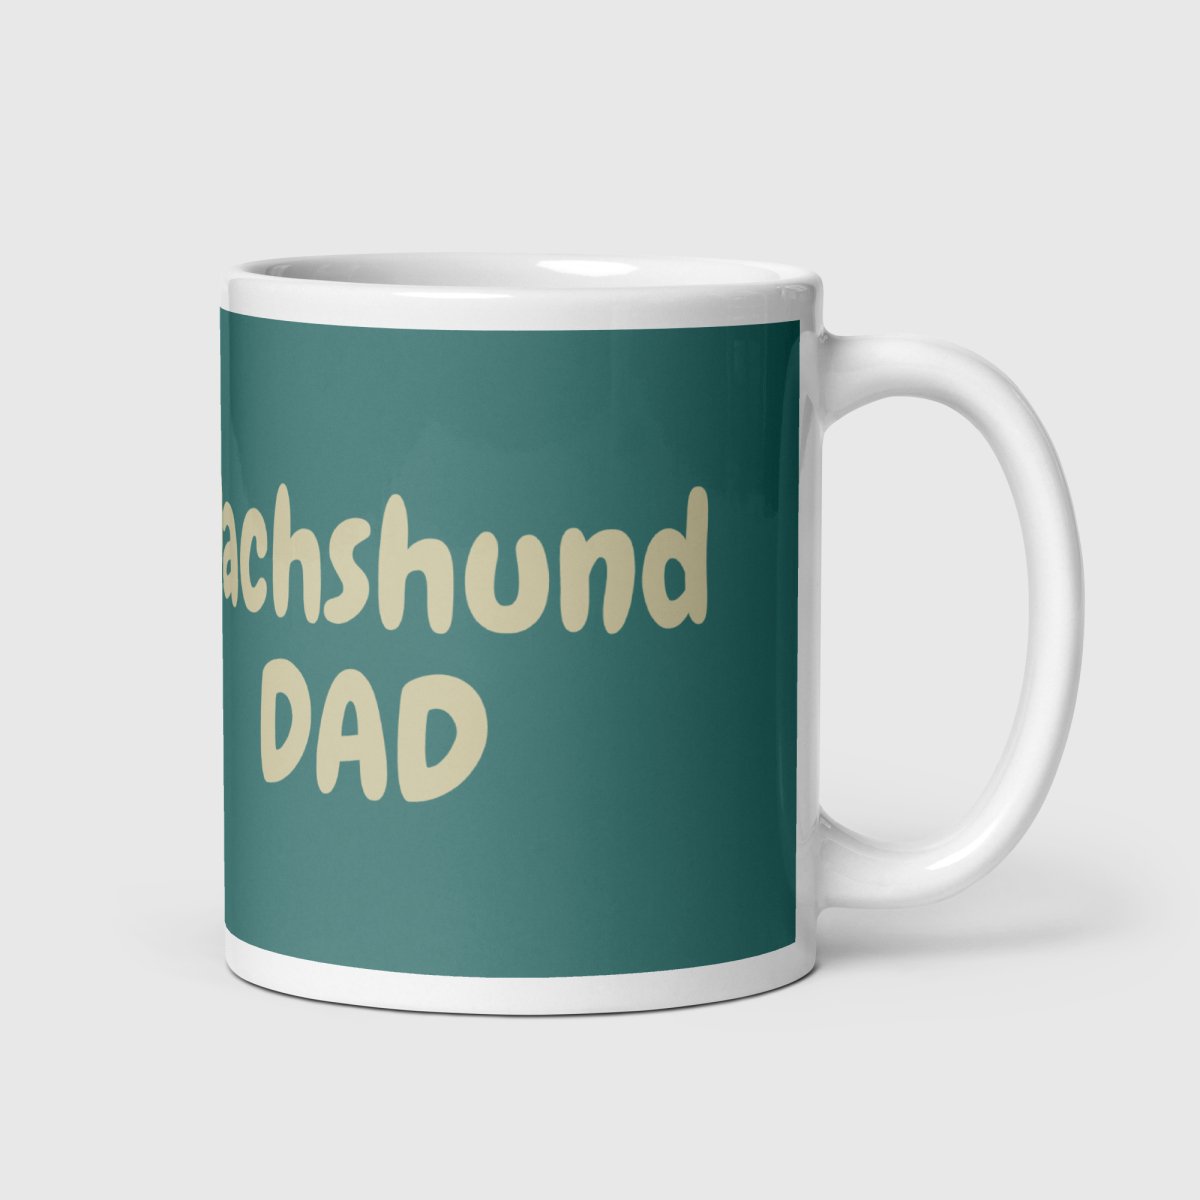 Dachshund Dad Mug - Funny Nikko